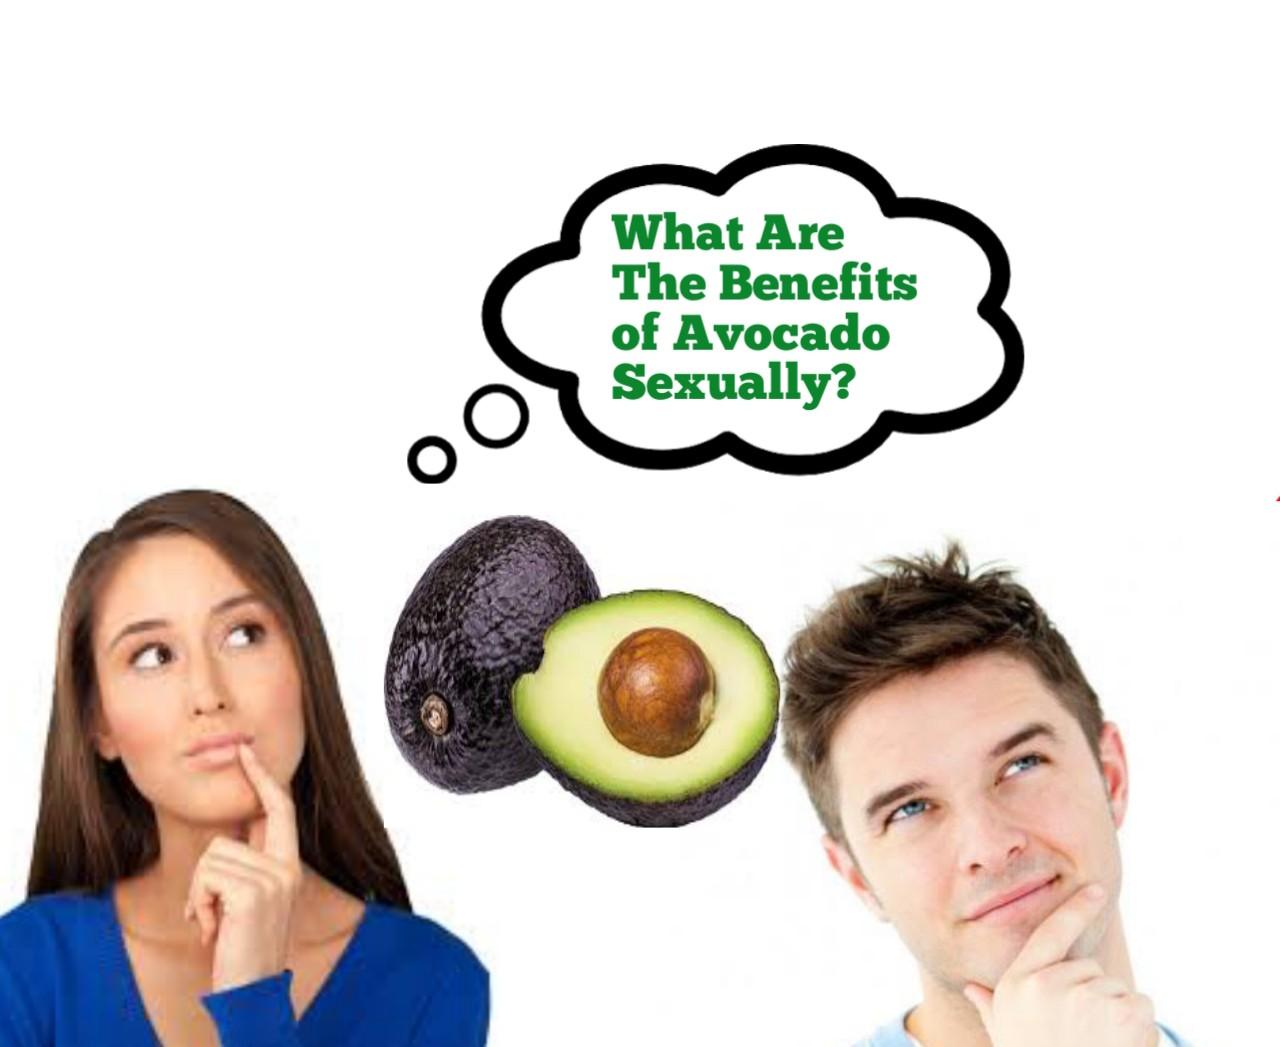 Avocado eat avocados